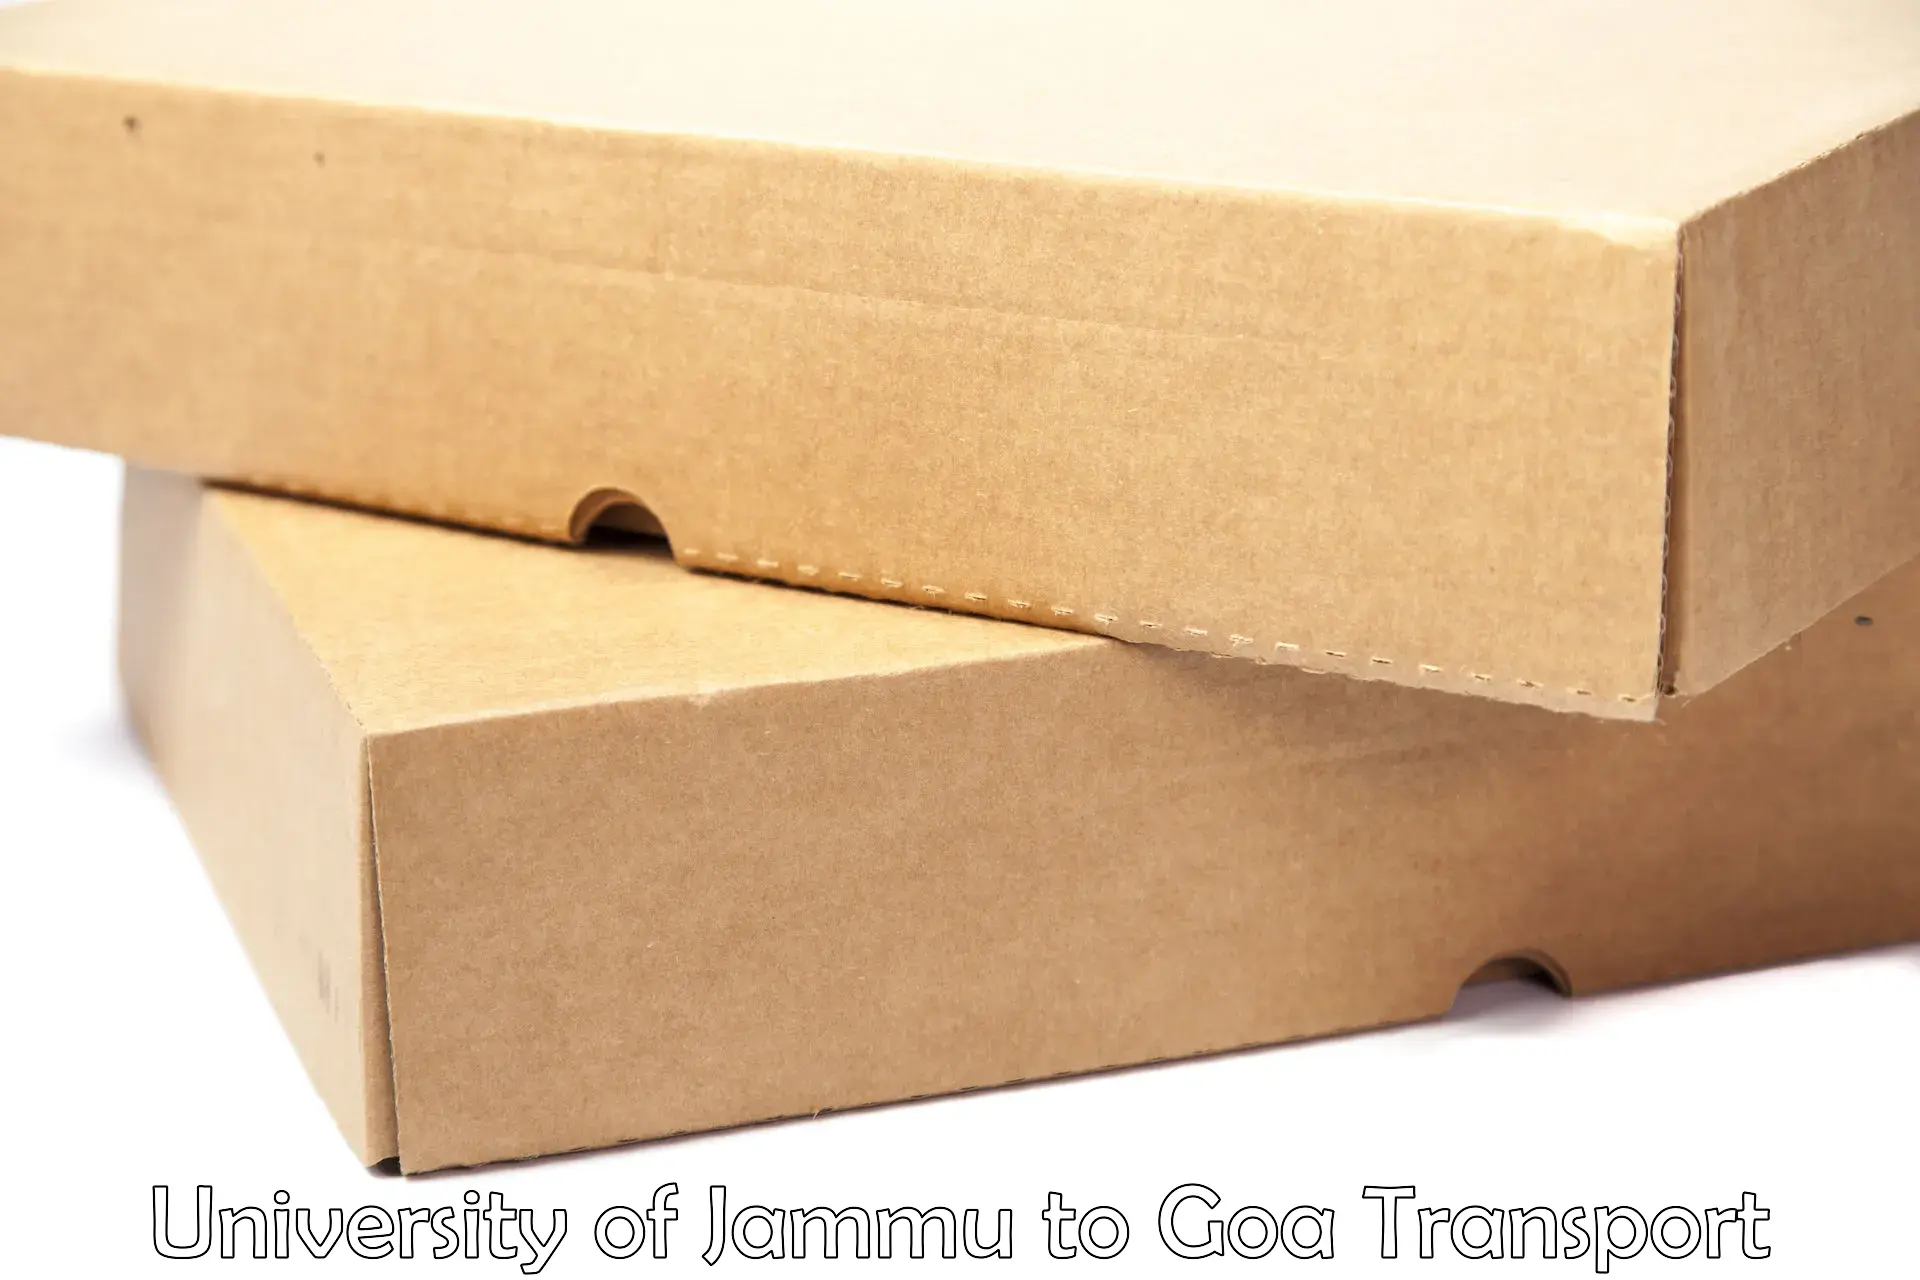 Daily parcel service transport University of Jammu to NIT Goa